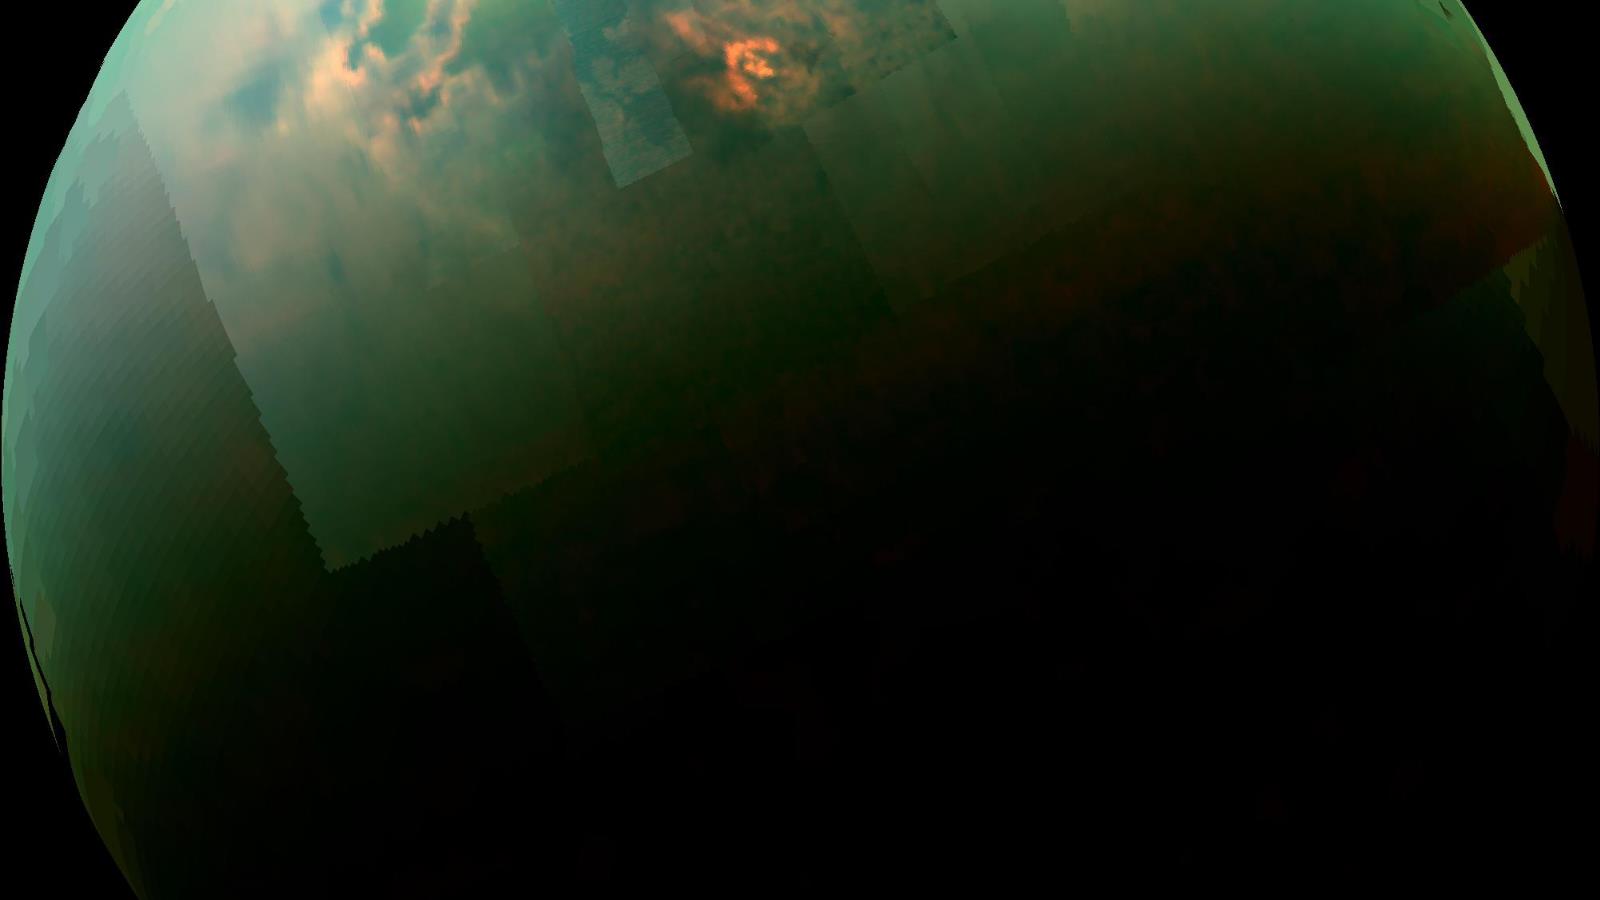 قمر تيتان يعد الجرم الوحيد في النظام الشمسي الذي يحتوي على سوائل دائمة على سطحه (الجزيرة)